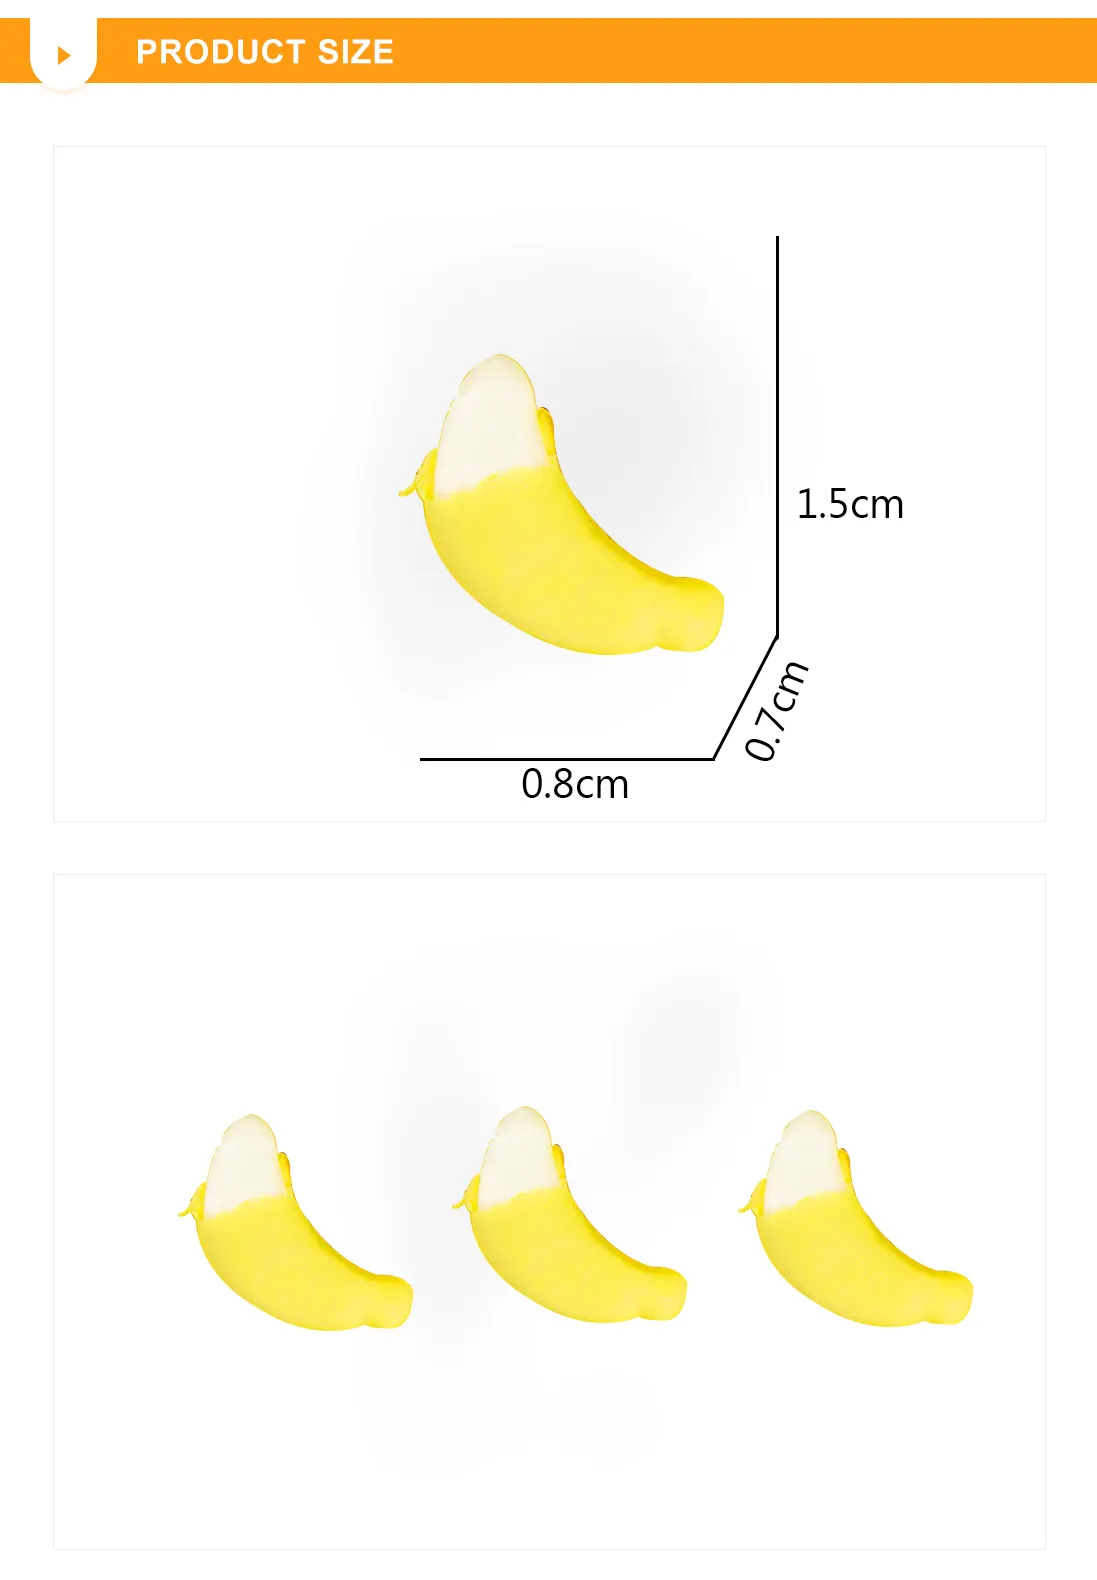 Doces de goma macia personalizados em forma de fruta, doces de gelatina de banana descascados 4D